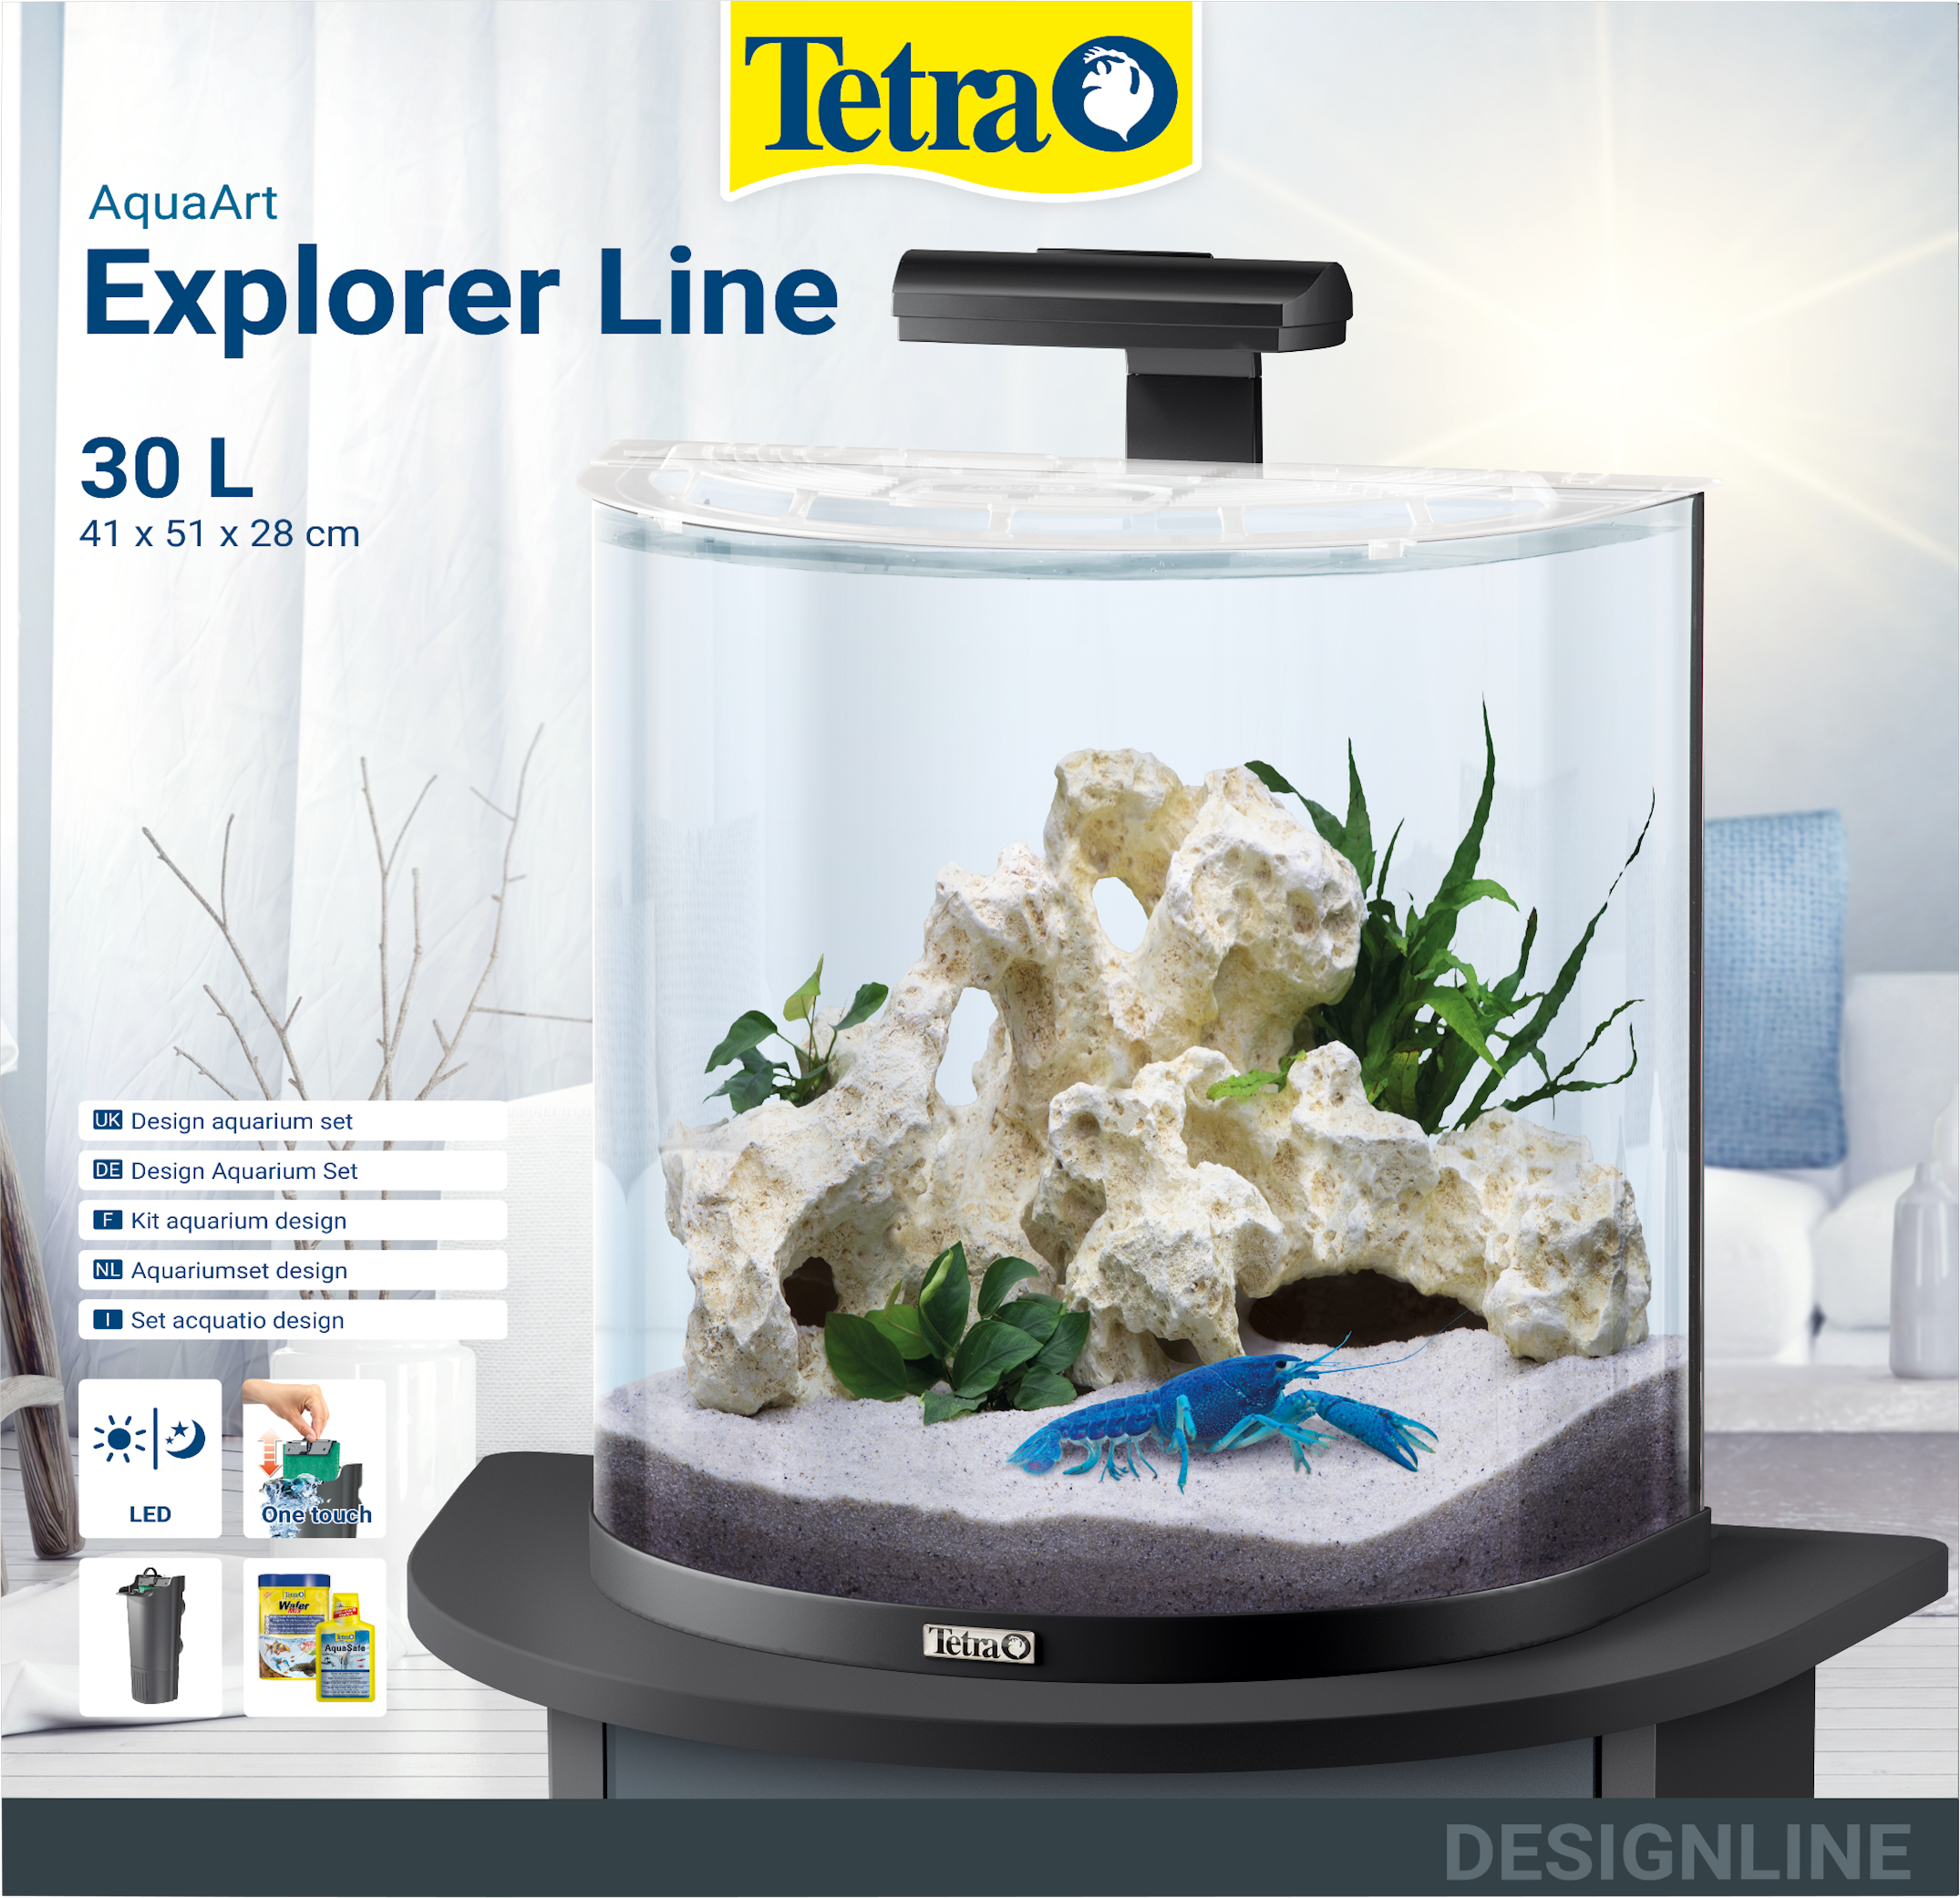 30L Tetra AquaArt LED Explorer Line aquarium set - Crayfish: Tetra